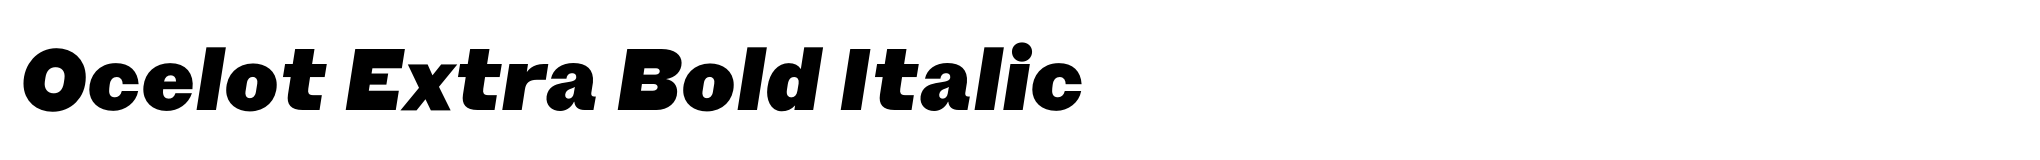 Ocelot Extra Bold Italic image